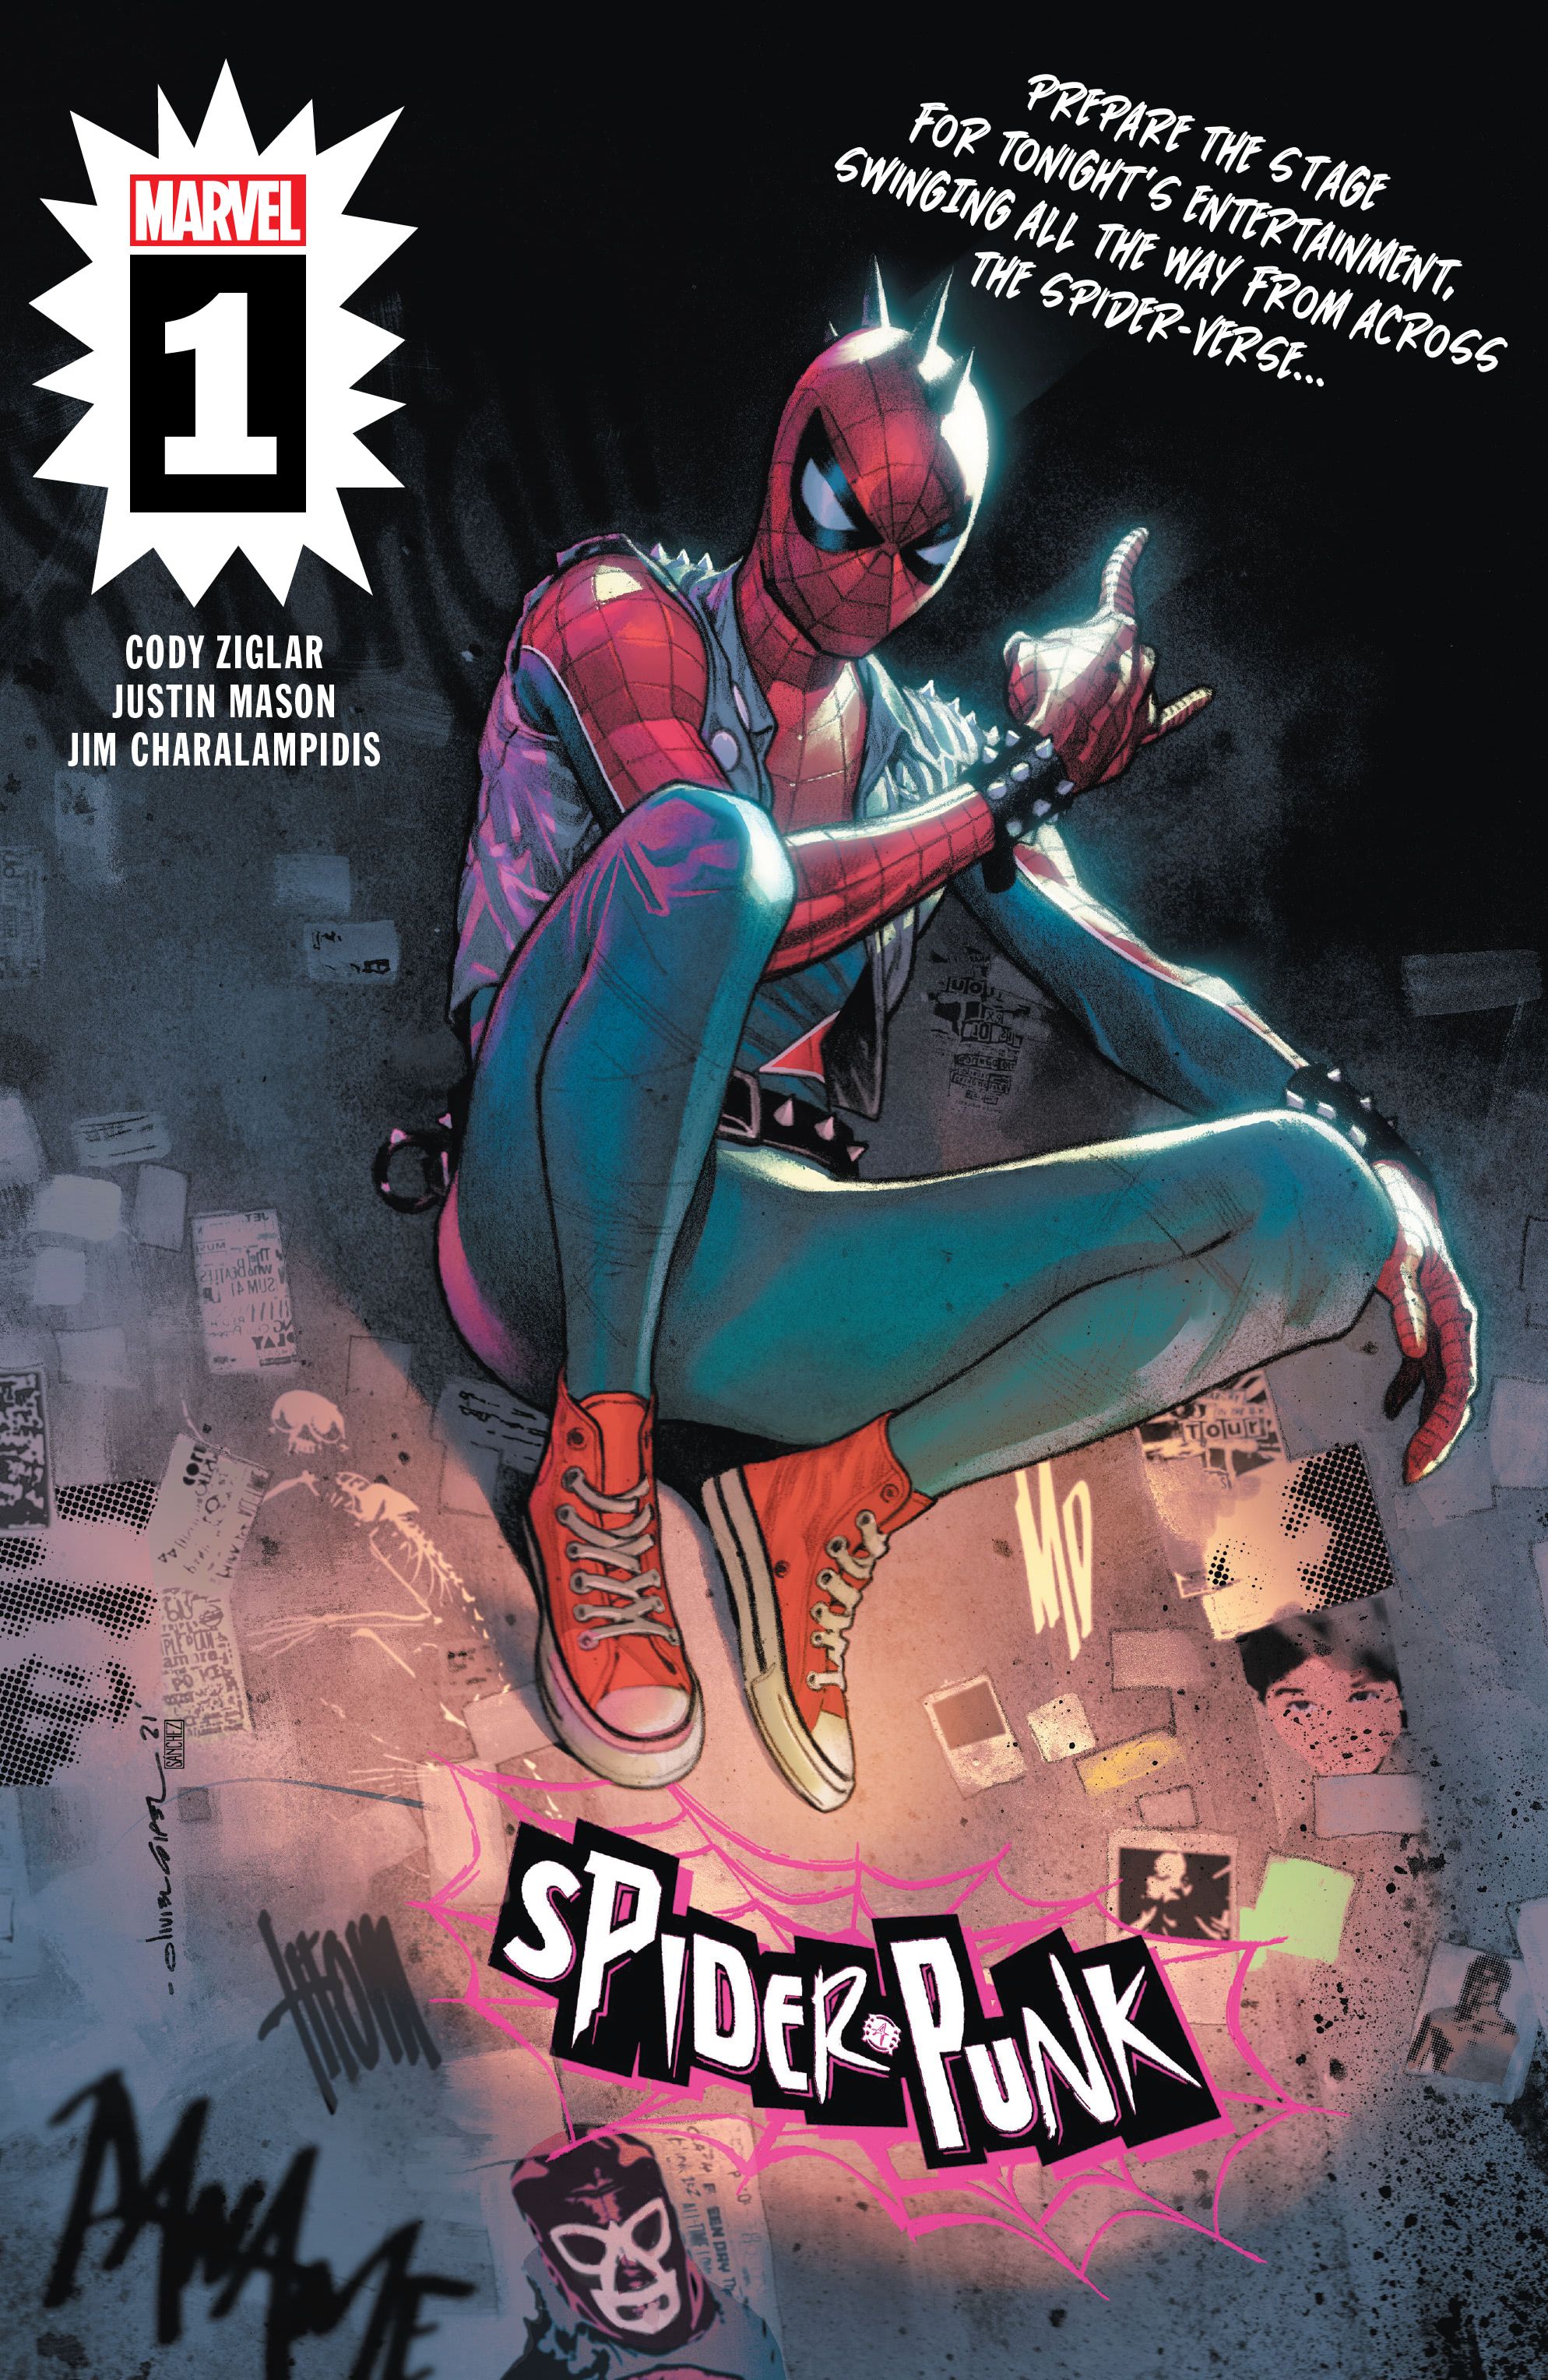 Reseña del cómic Marvel's Spider-Punk #1